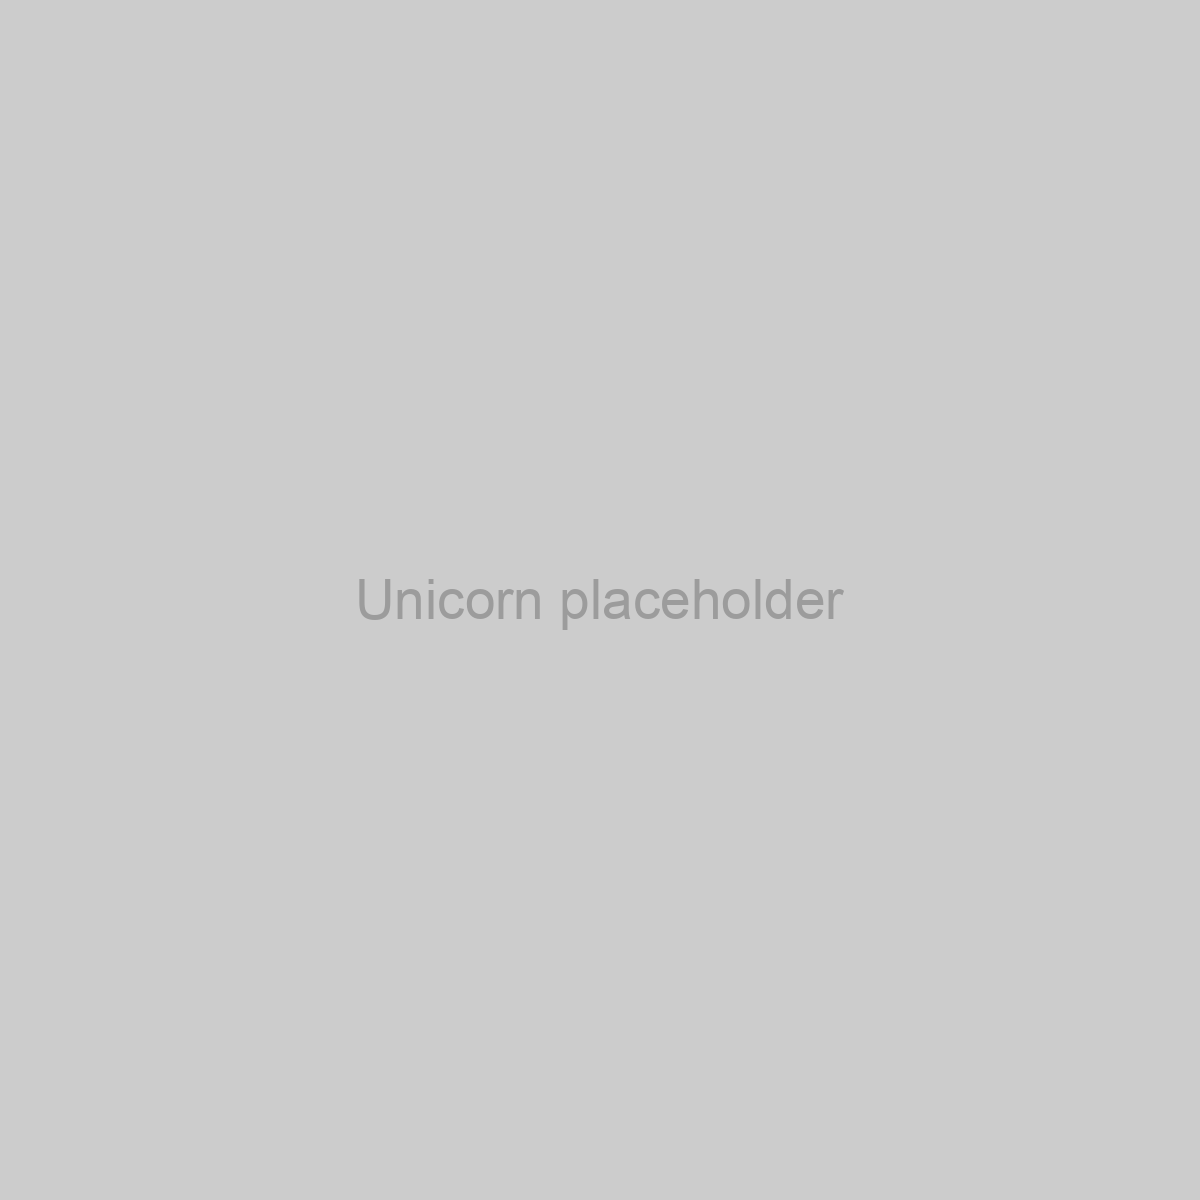 Unicorn Placeholder Image